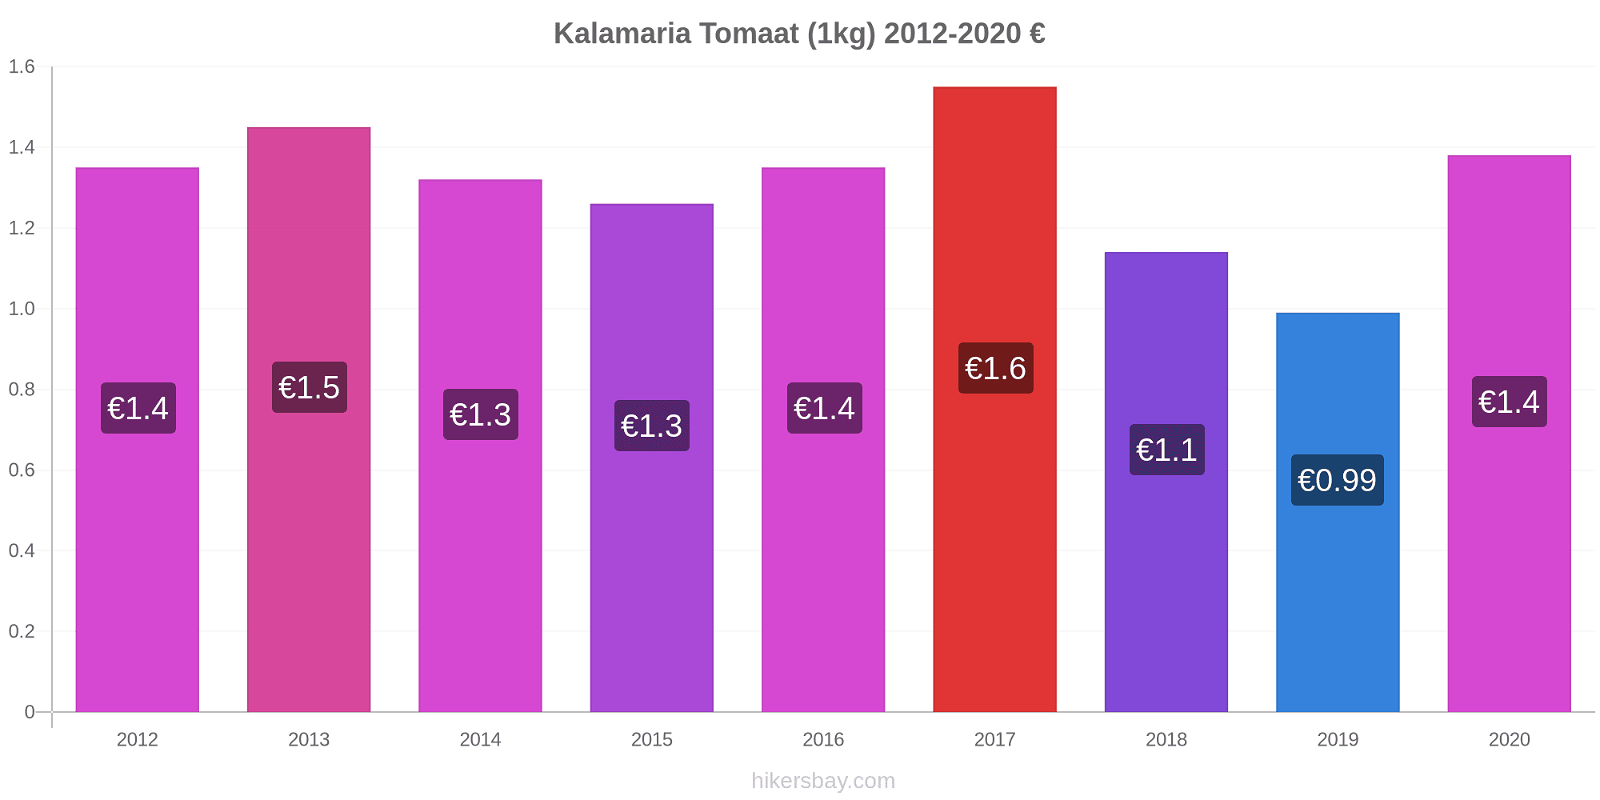 Kalamaria prijswijzigingen Tomaat (1kg) hikersbay.com